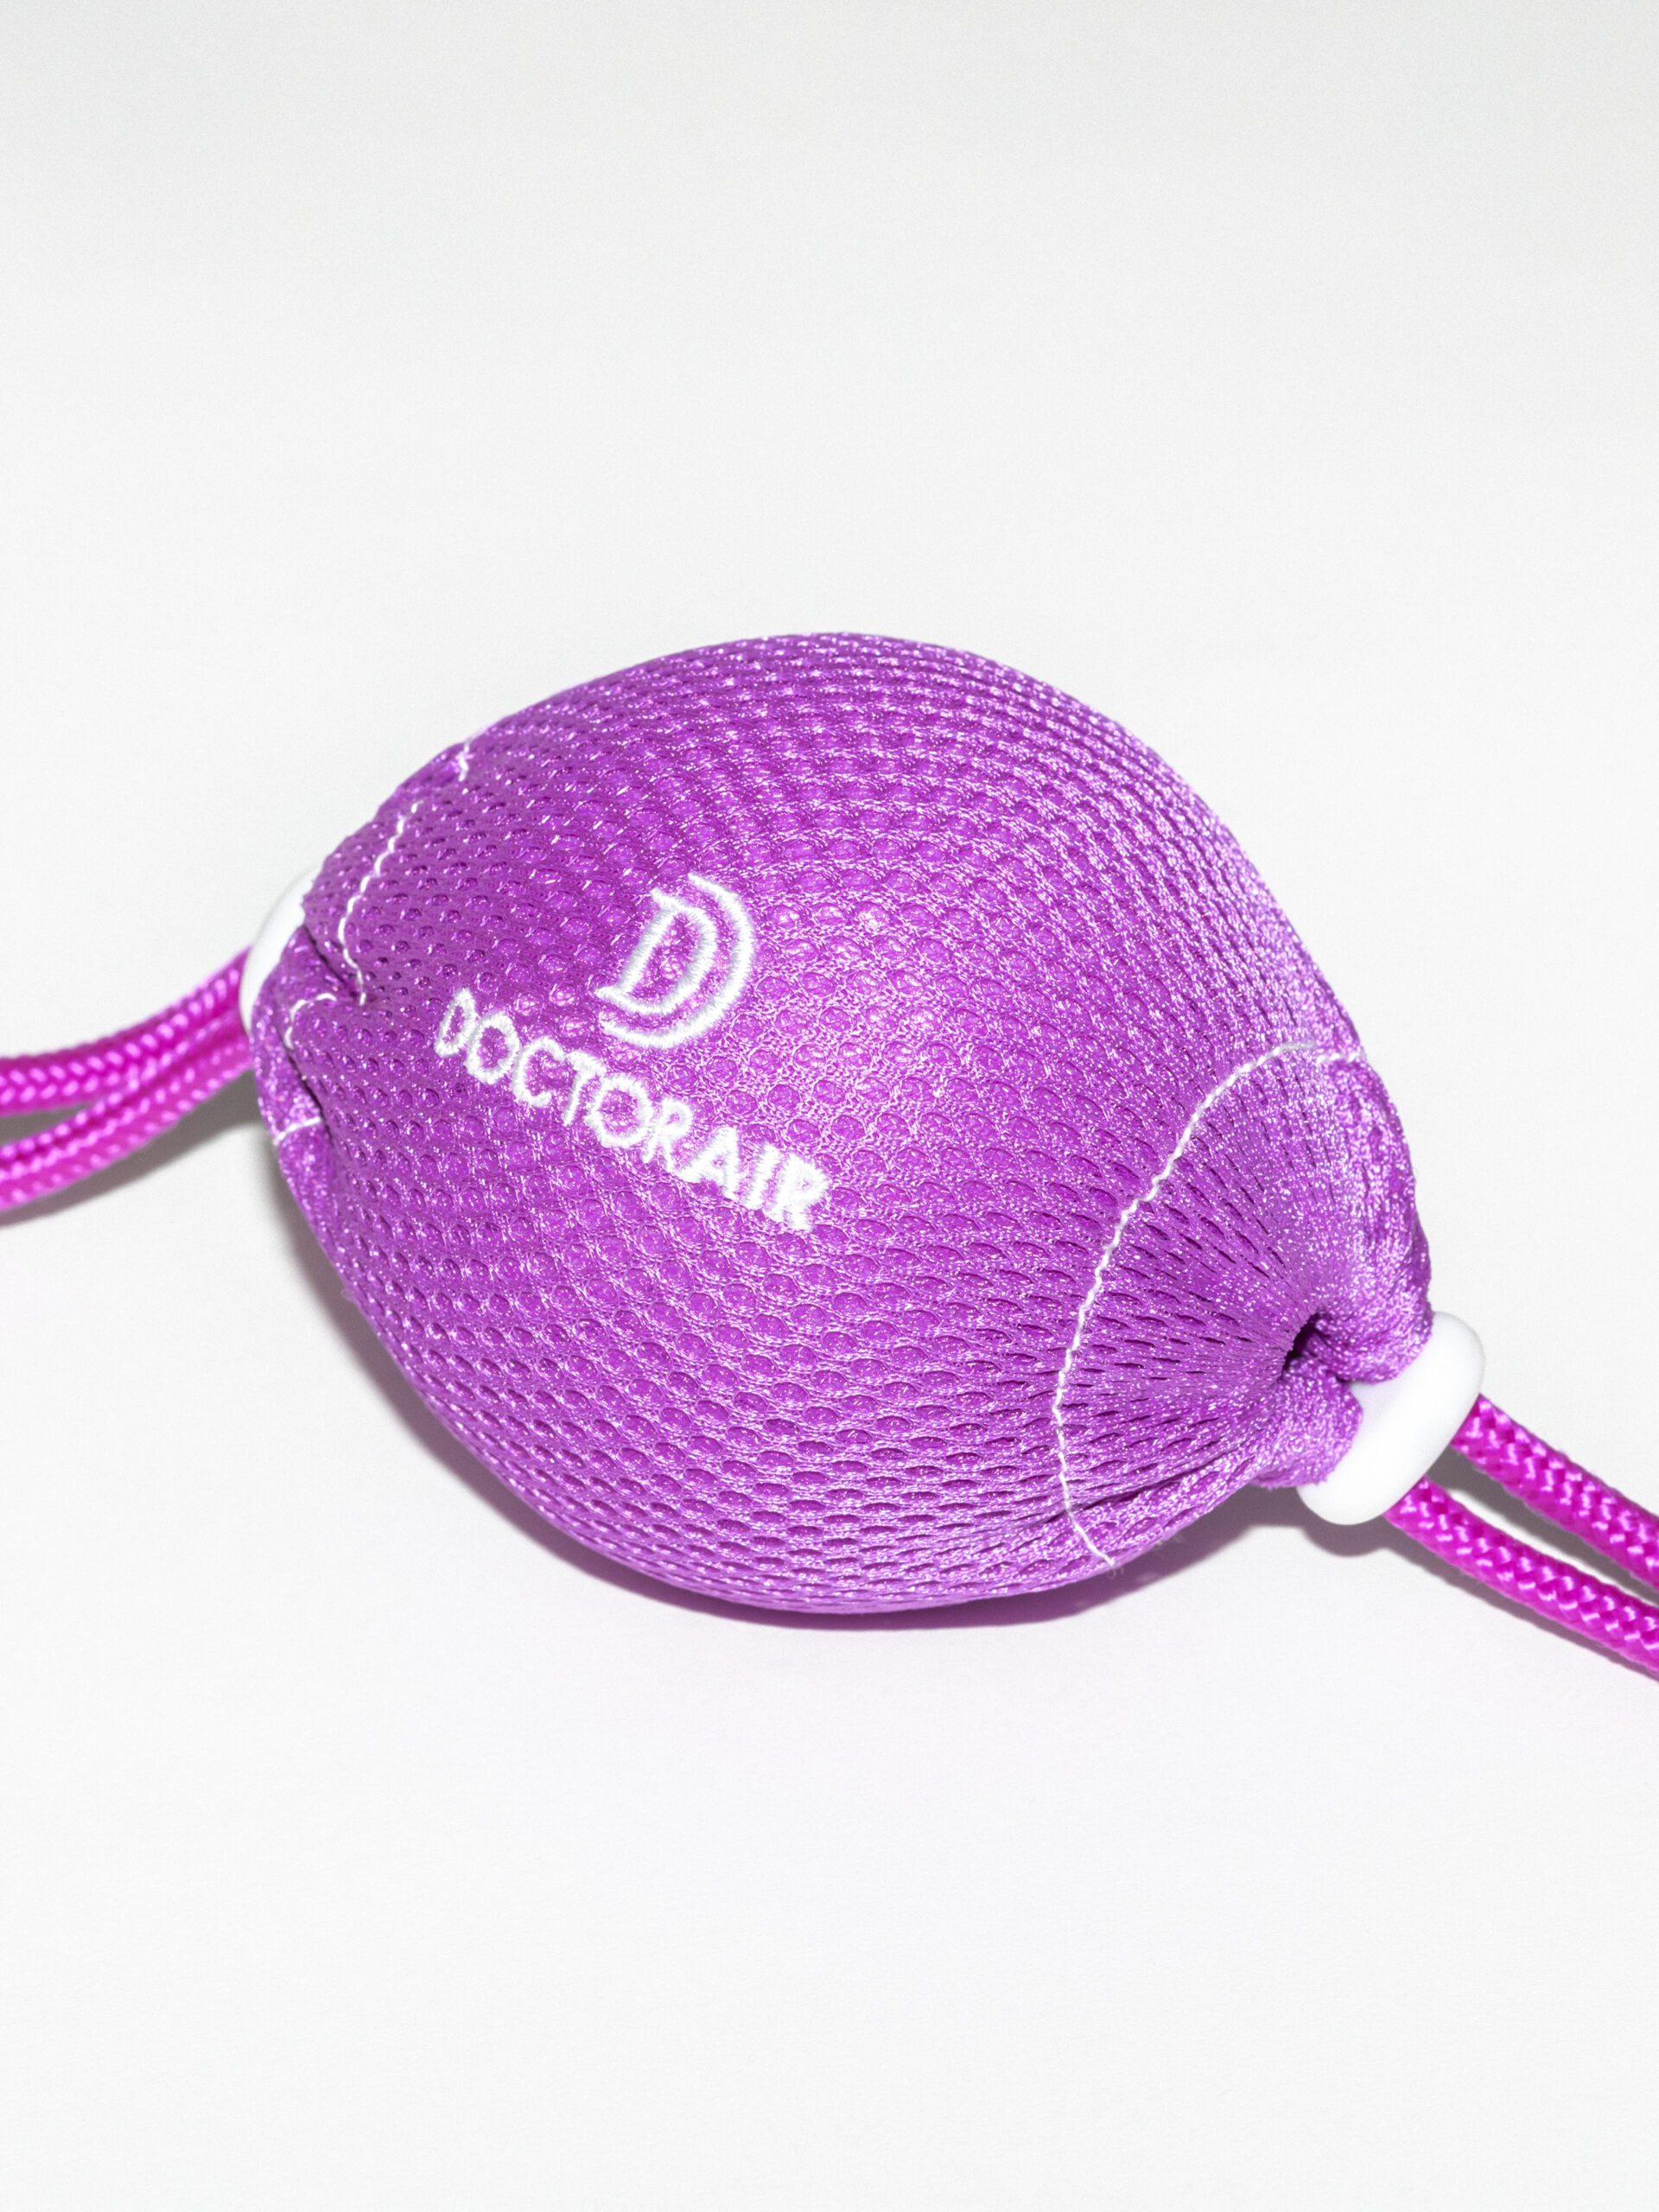 「ドクターエア」のストレッチサポート機器 “3Dコンディショニングボール” 